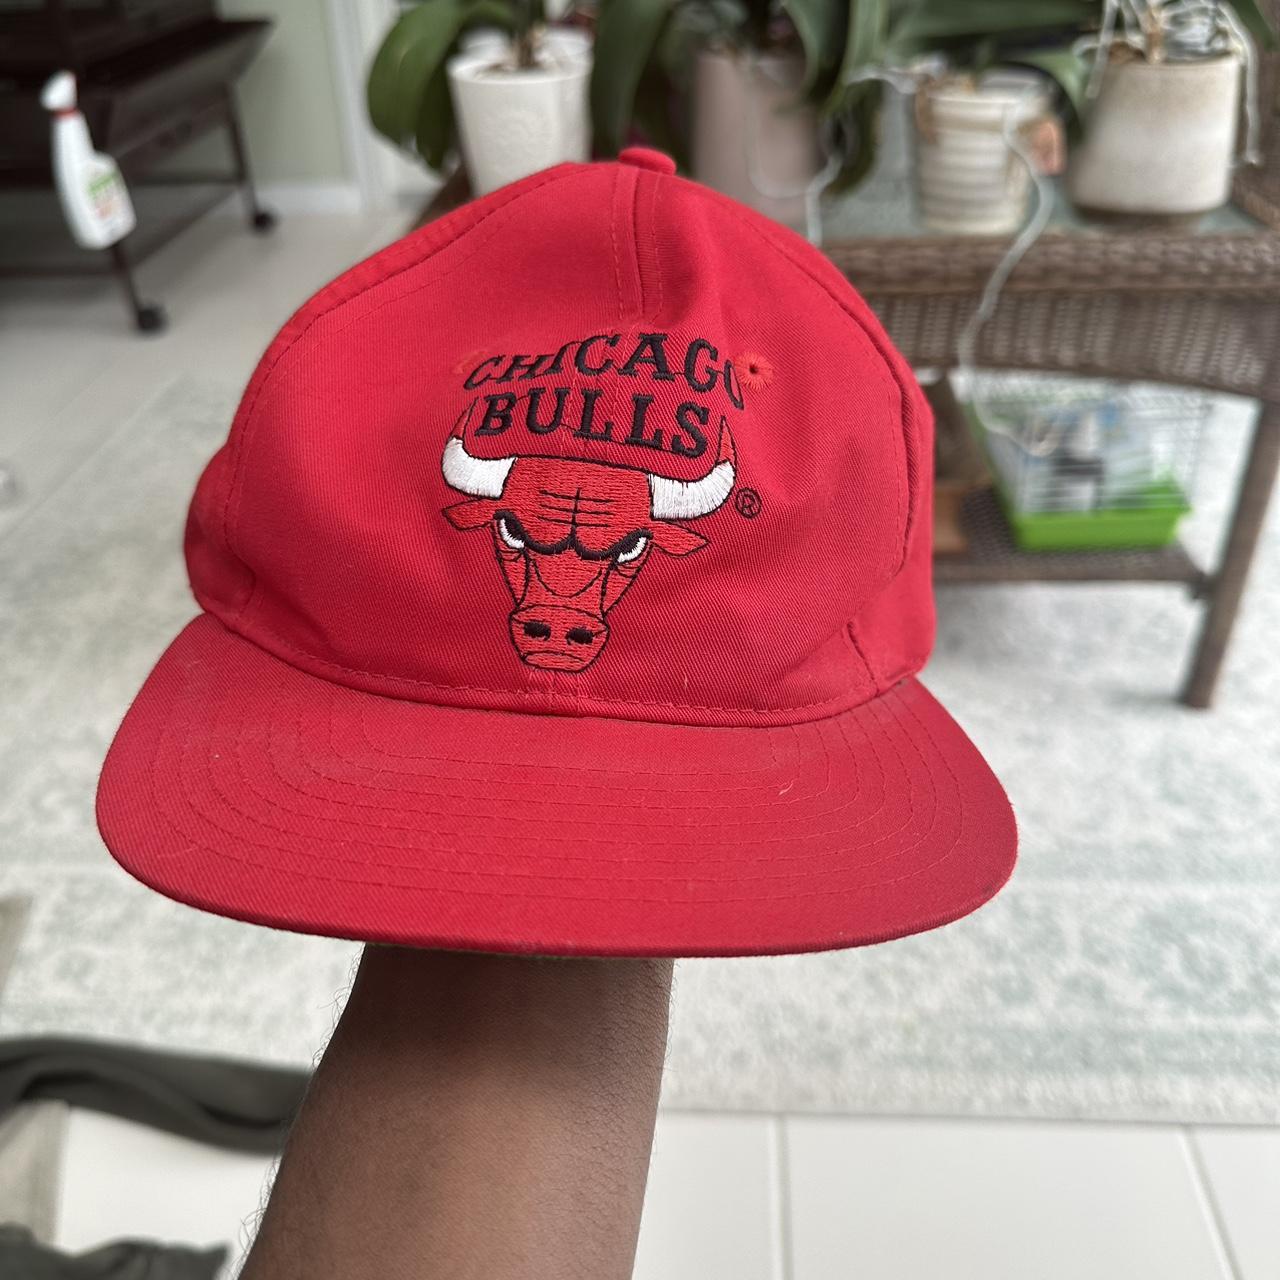 Vintage Chicago Bulls 1996 Championship Snapback Hat - Depop